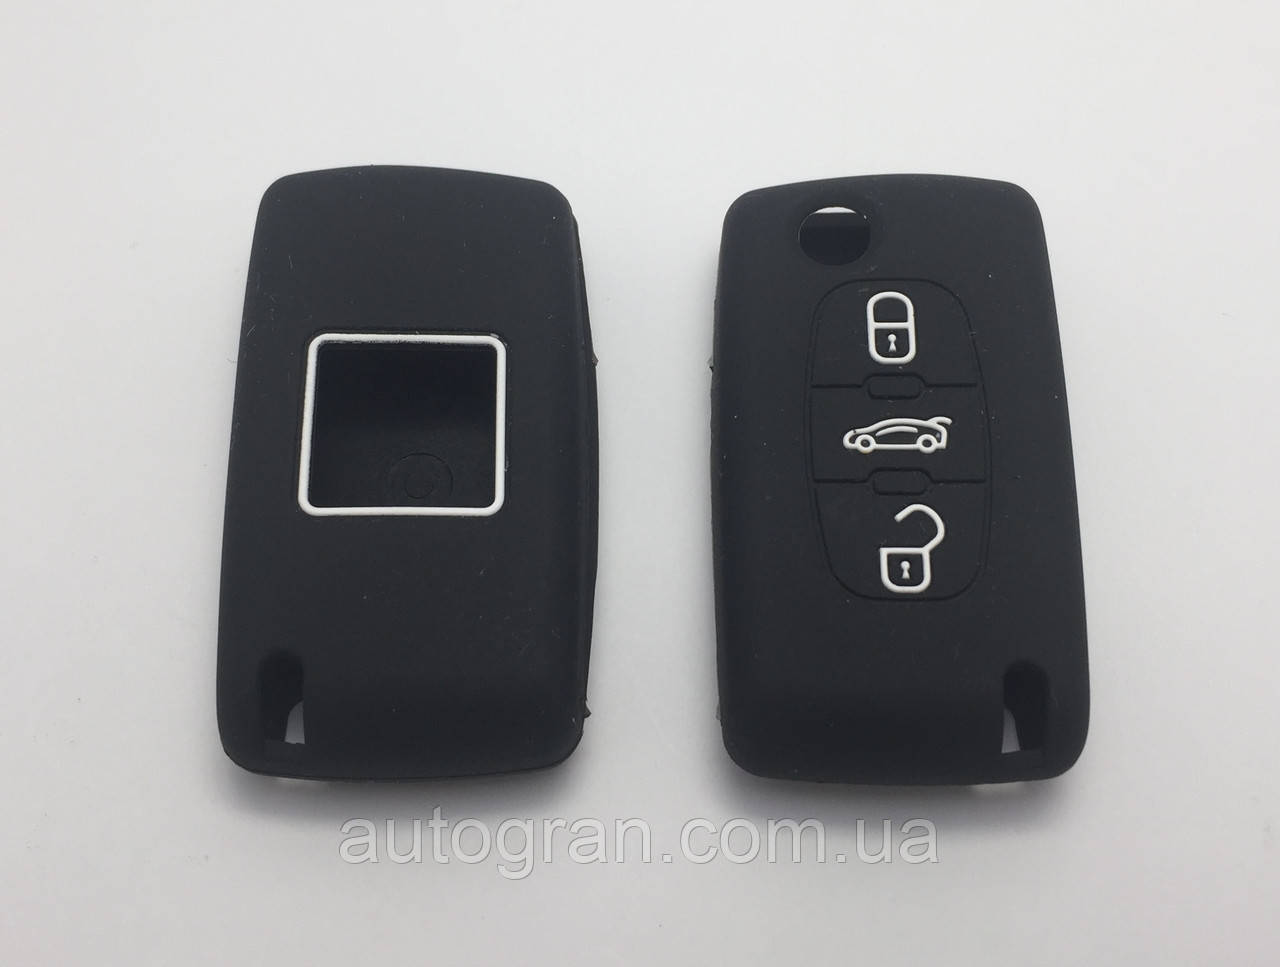 Силіконовий чохол на викидний ключ Peugeot 3 кнопки